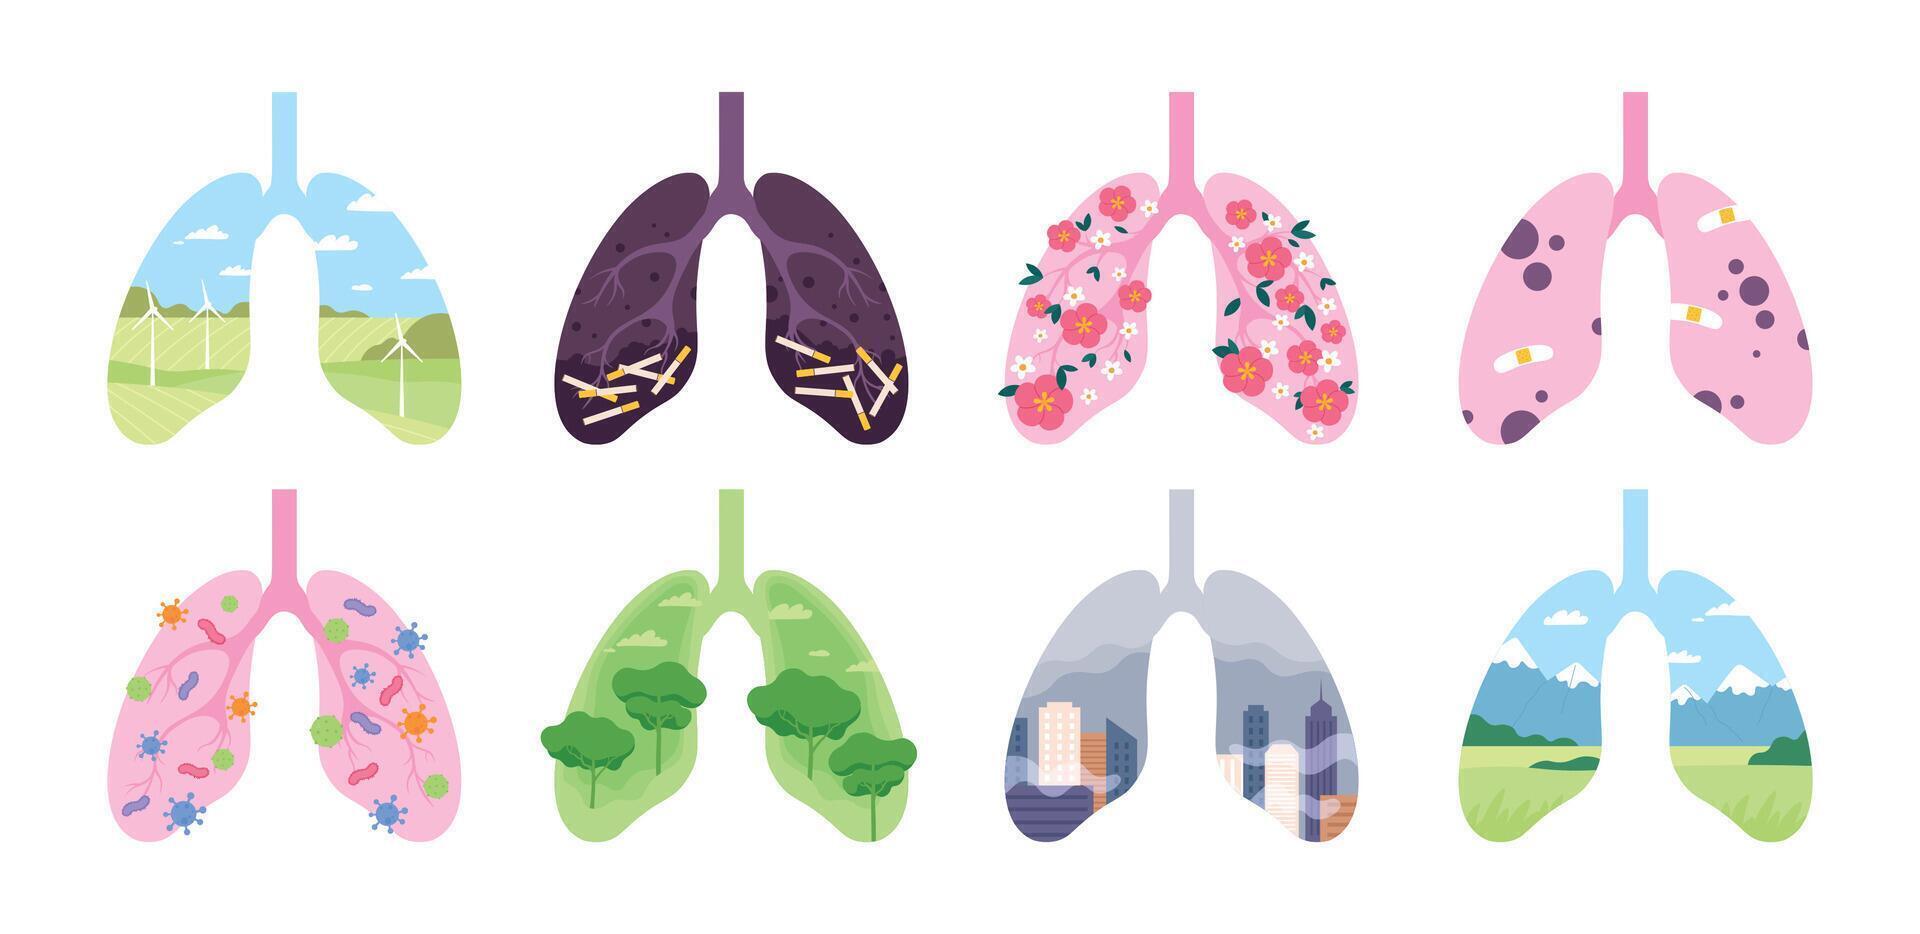 gesund und ungesund Lunge, Tabak und Verschmutzung Schaden Konzept. klar Atemwege System mit Feld, Baum, Blume. krank Lunge Vektor einstellen